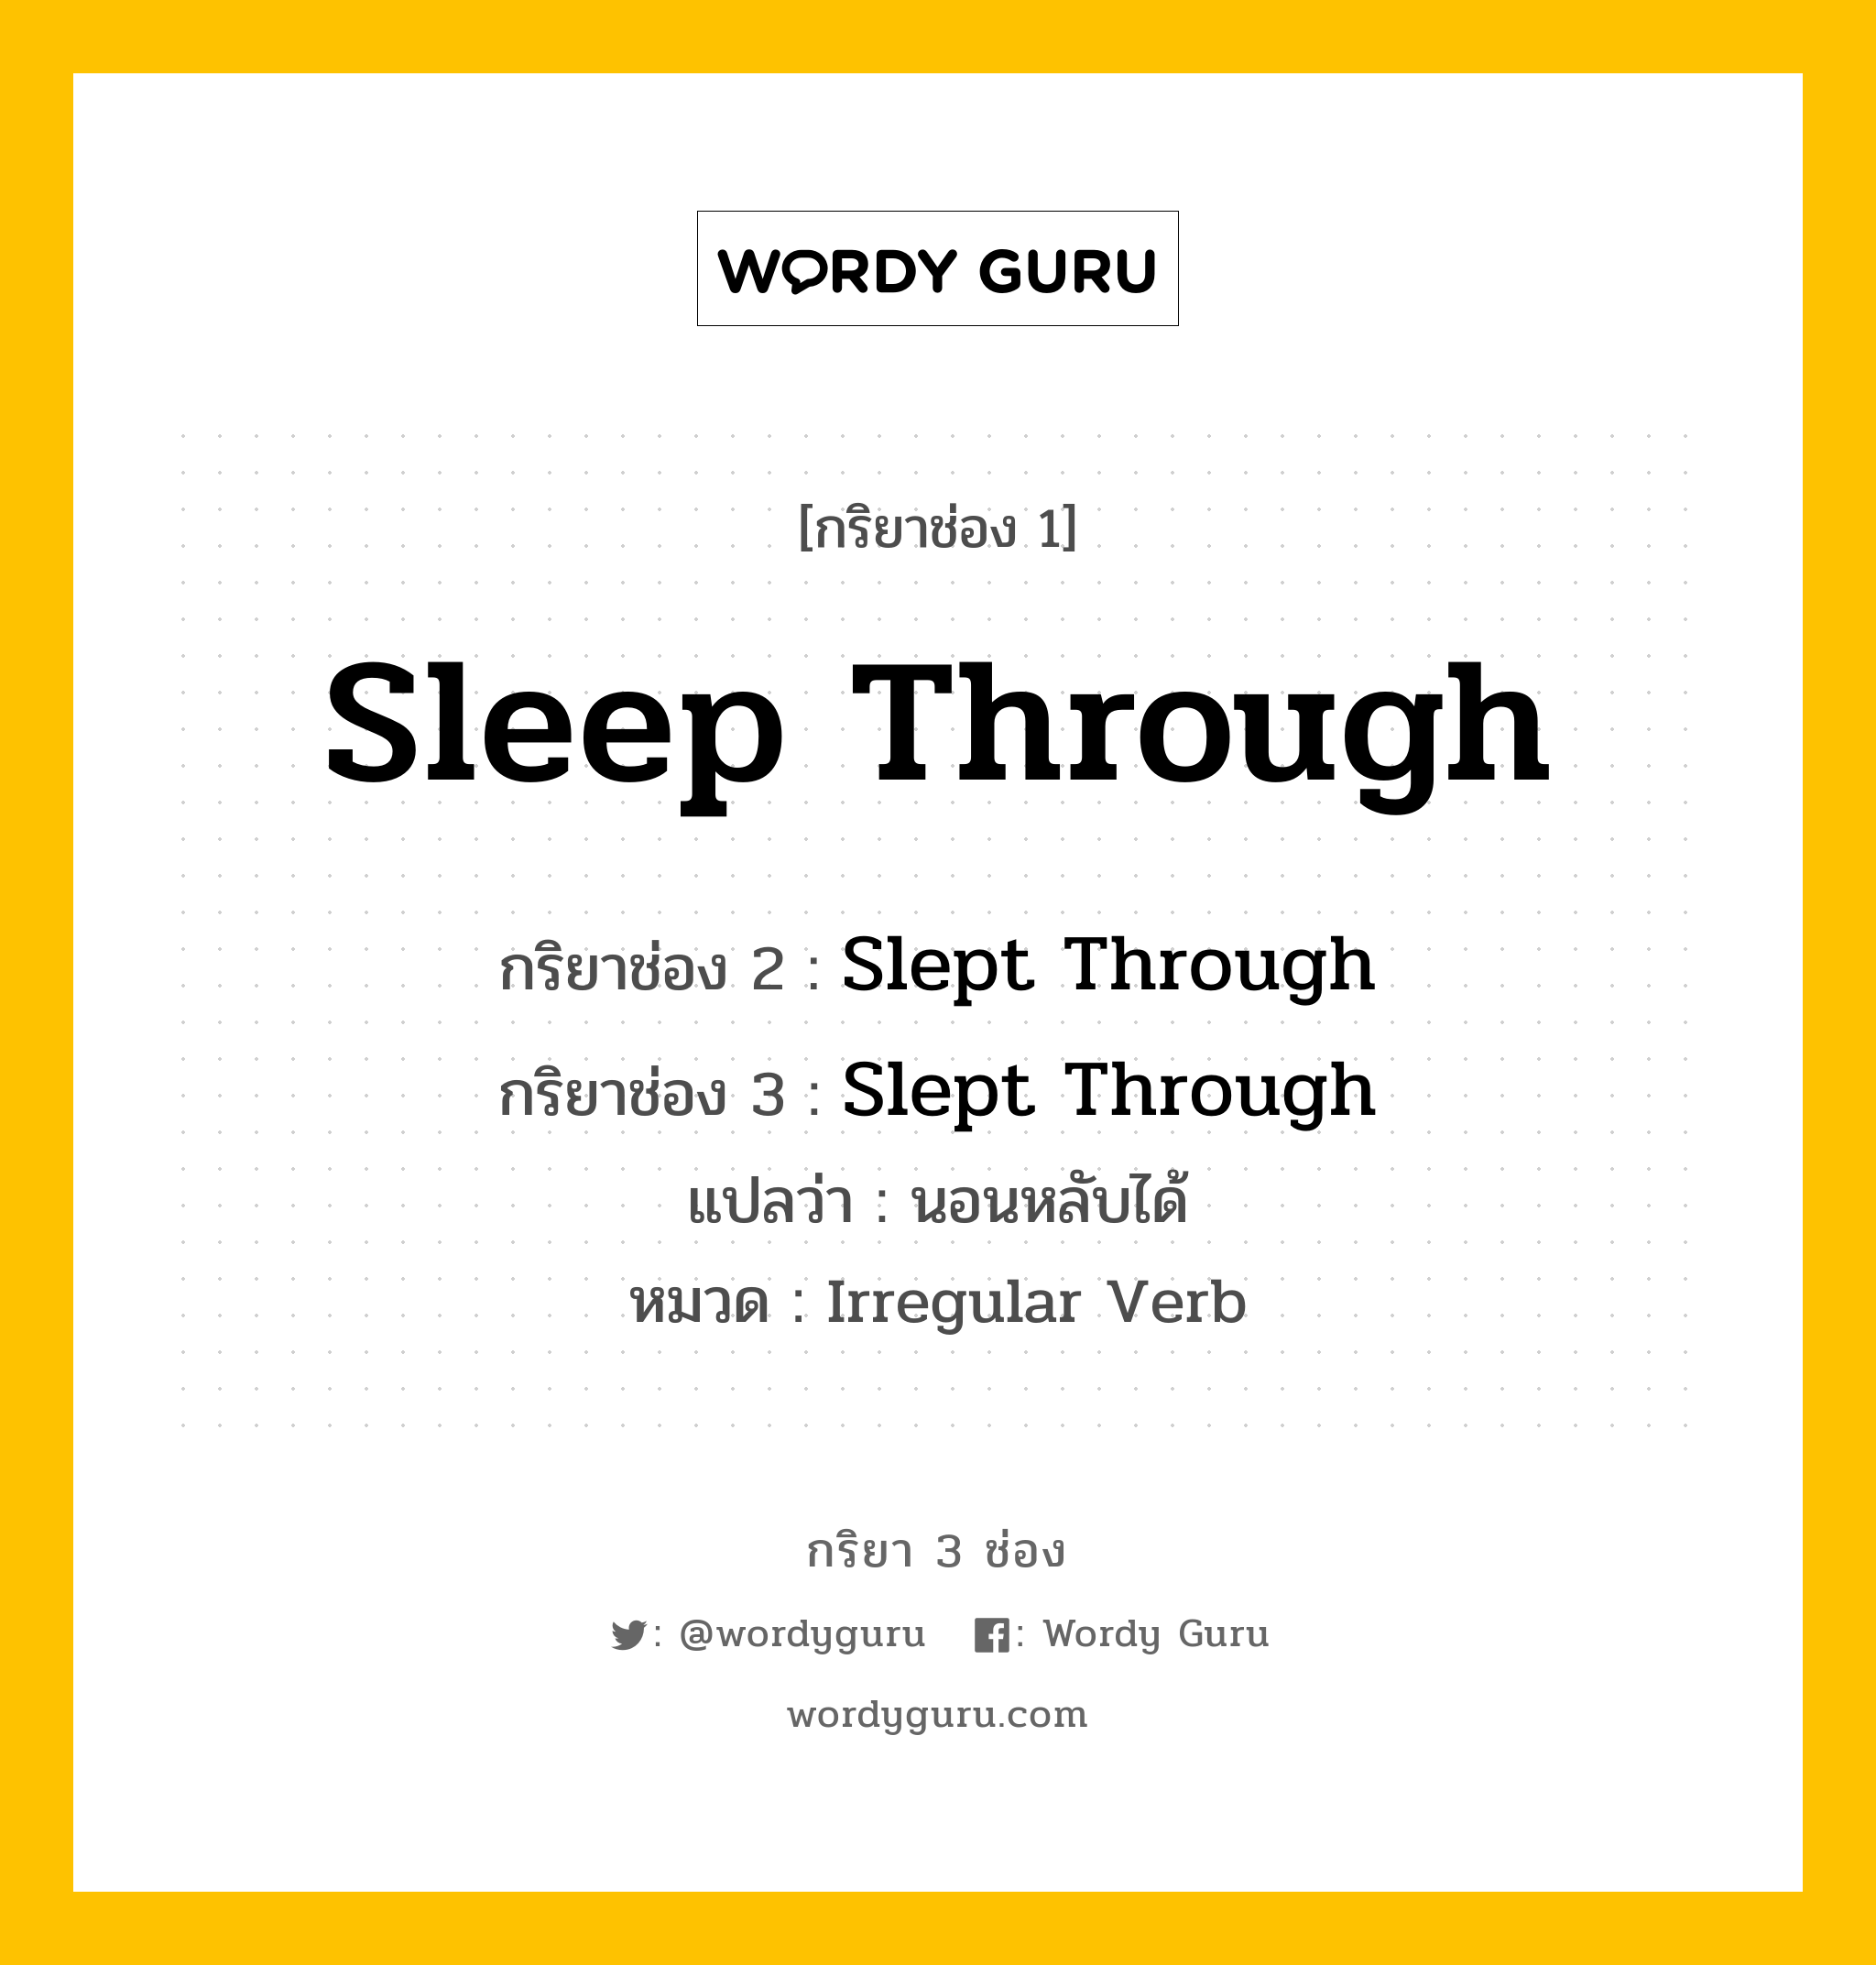 กริยา 3 ช่อง: Sleep Through ช่อง 2 Sleep Through ช่อง 3 คืออะไร, กริยาช่อง 1 Sleep Through กริยาช่อง 2 Slept Through กริยาช่อง 3 Slept Through แปลว่า นอนหลับได้ หมวด Irregular Verb หมวด Irregular Verb